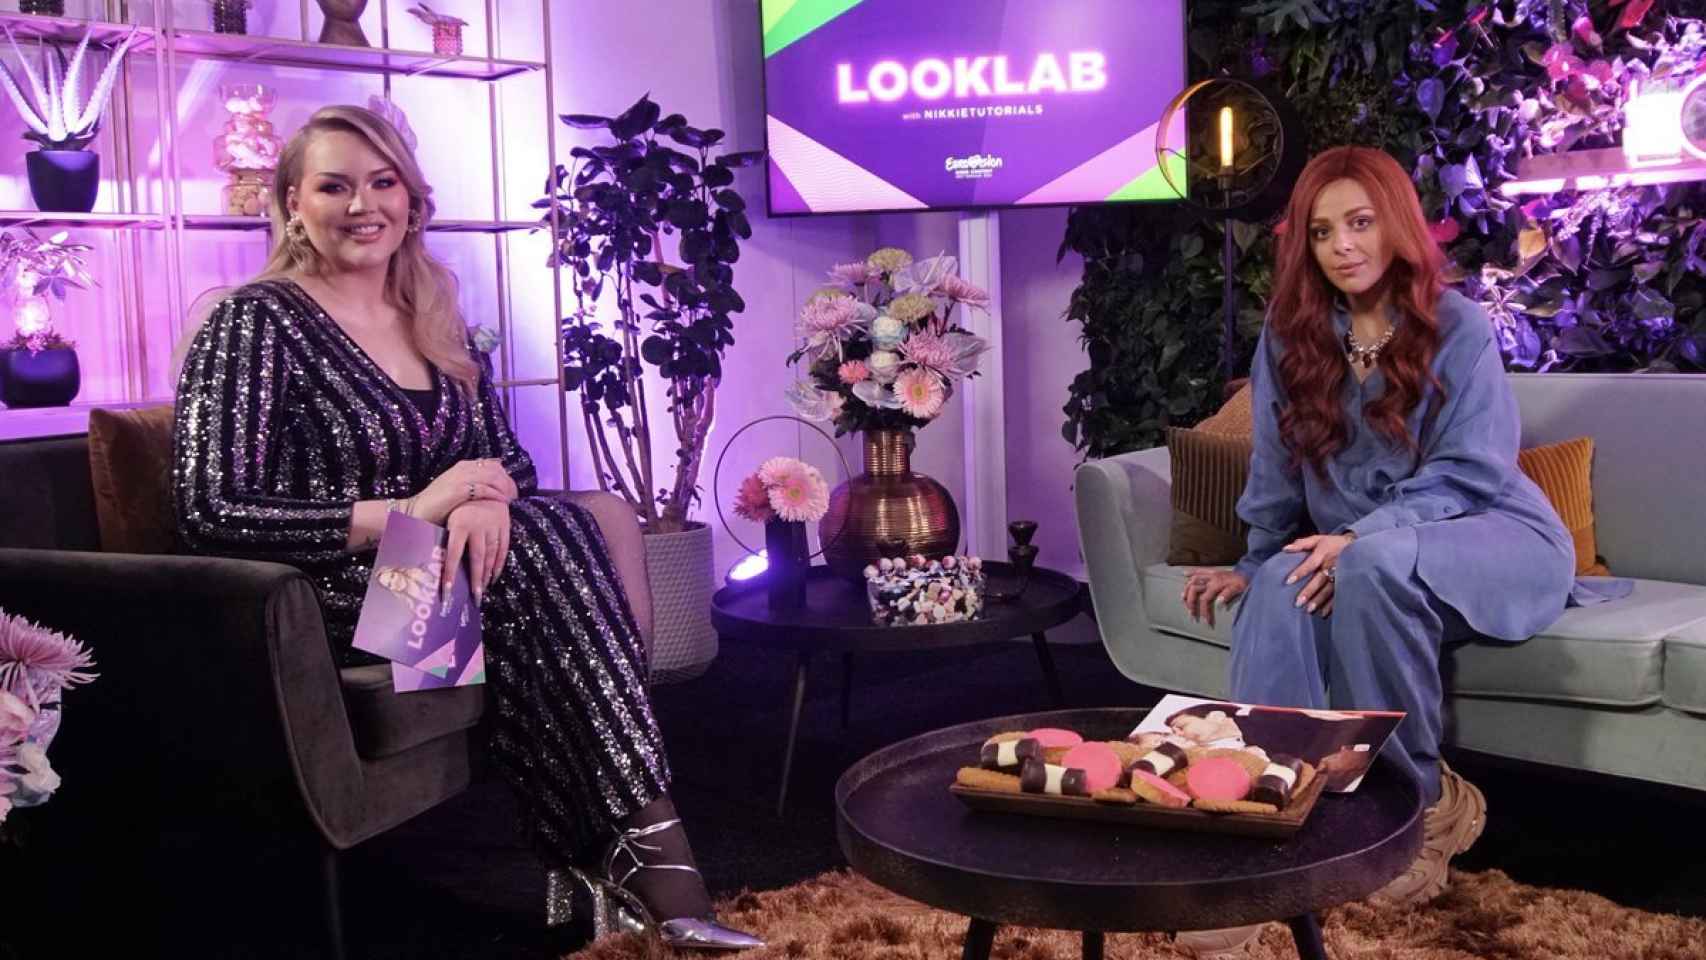 Nikkie entrevista a los artistas de Eurovisión 2021 en 'Looklab with Nikkietutorials'.